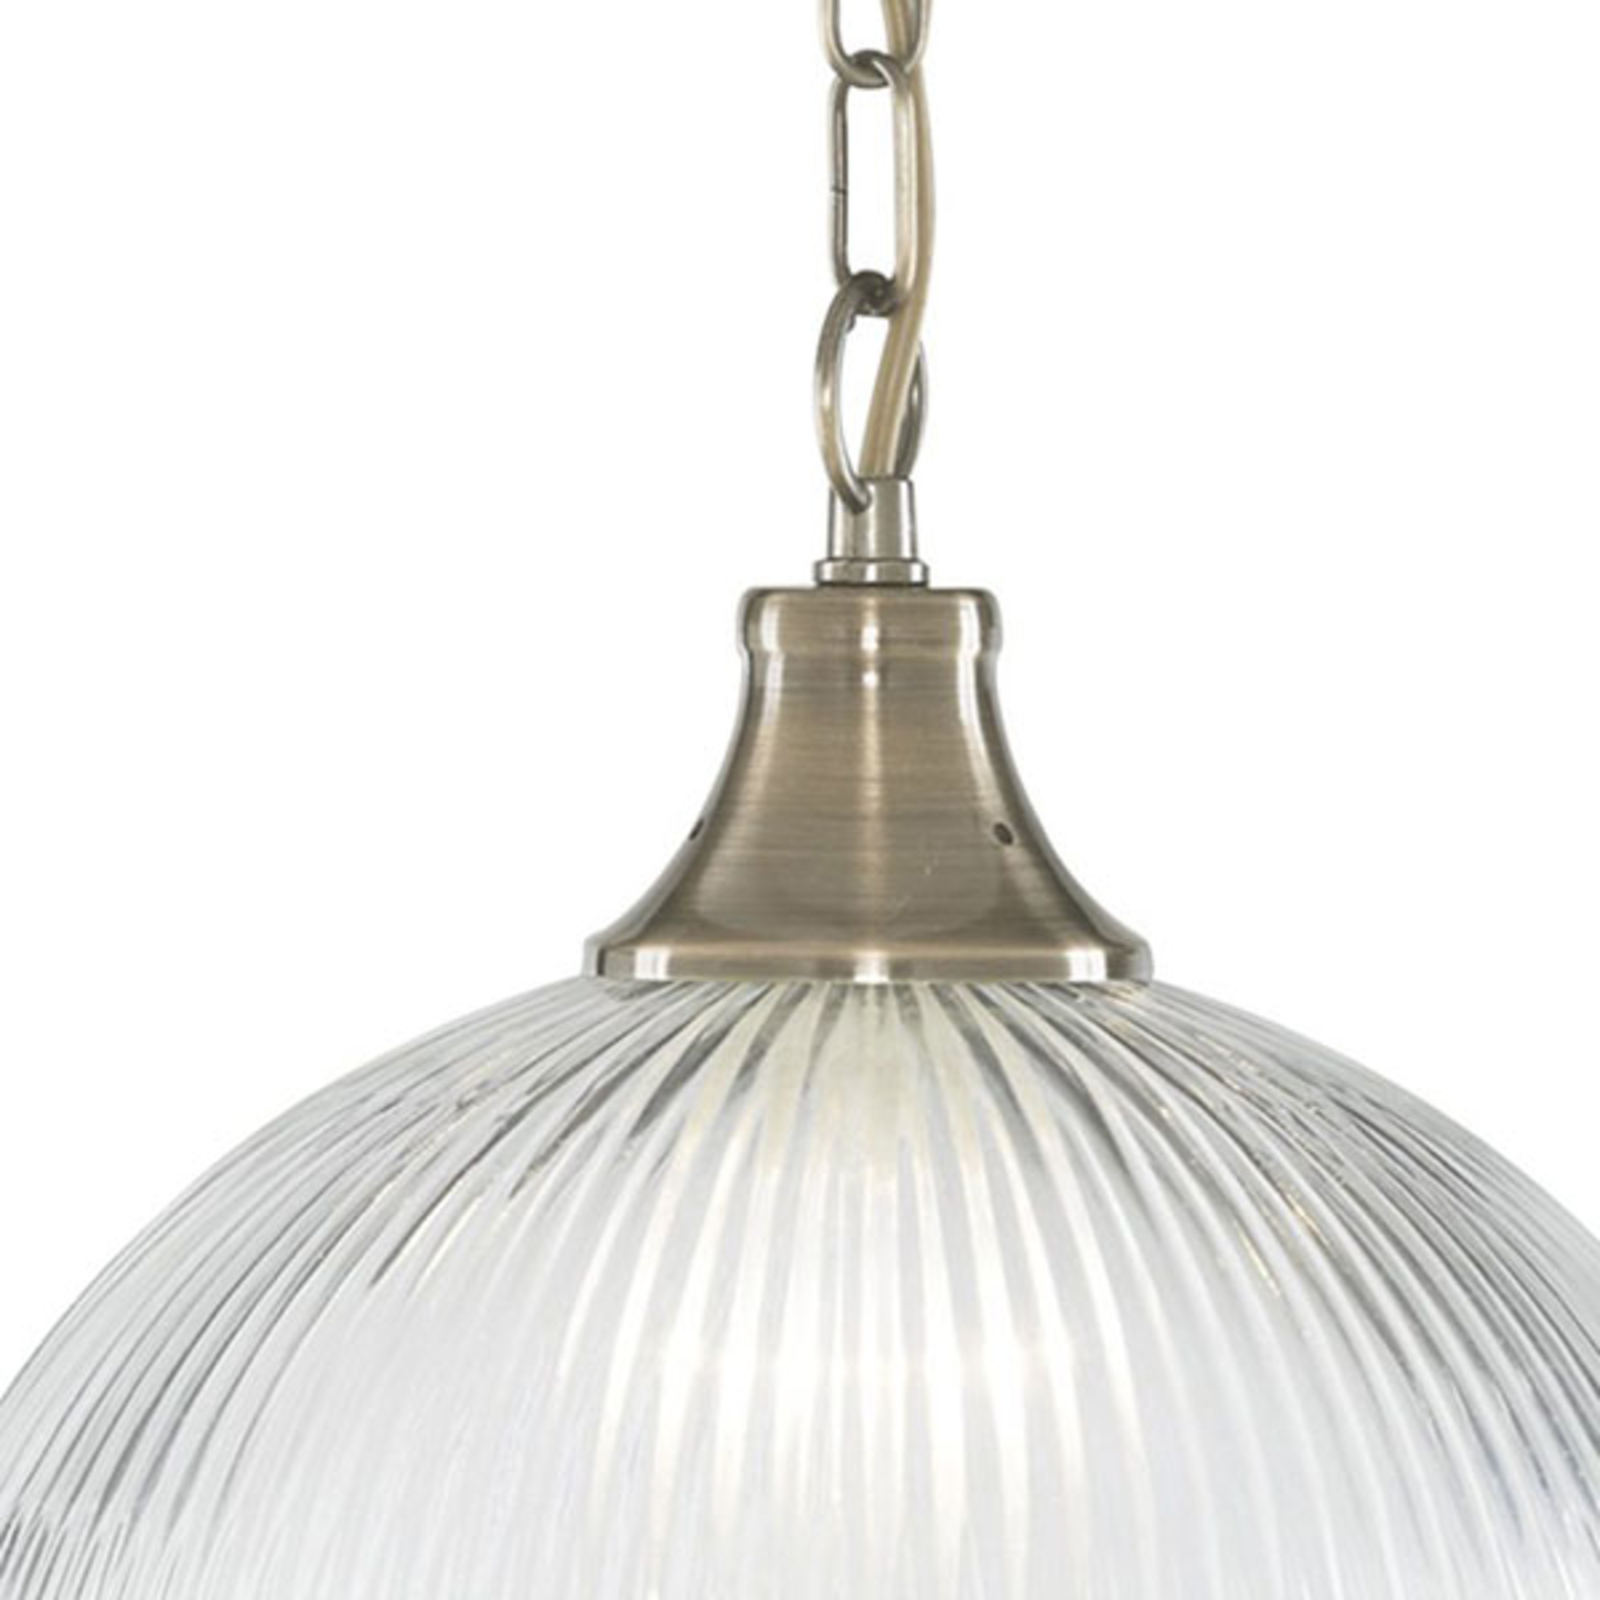 American Diner pendant light, one-bulb brass